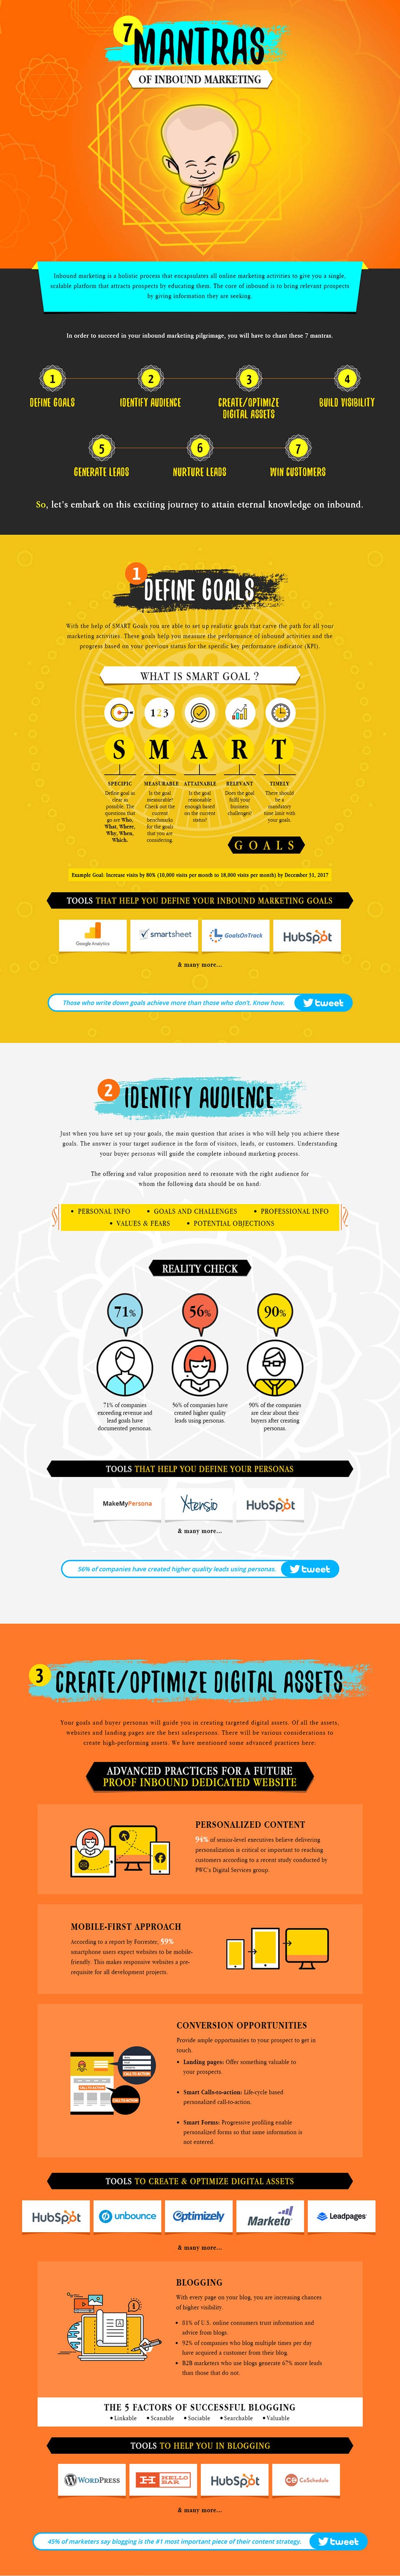 7 Mantras of Inbound Marketing (Infographic) - 1